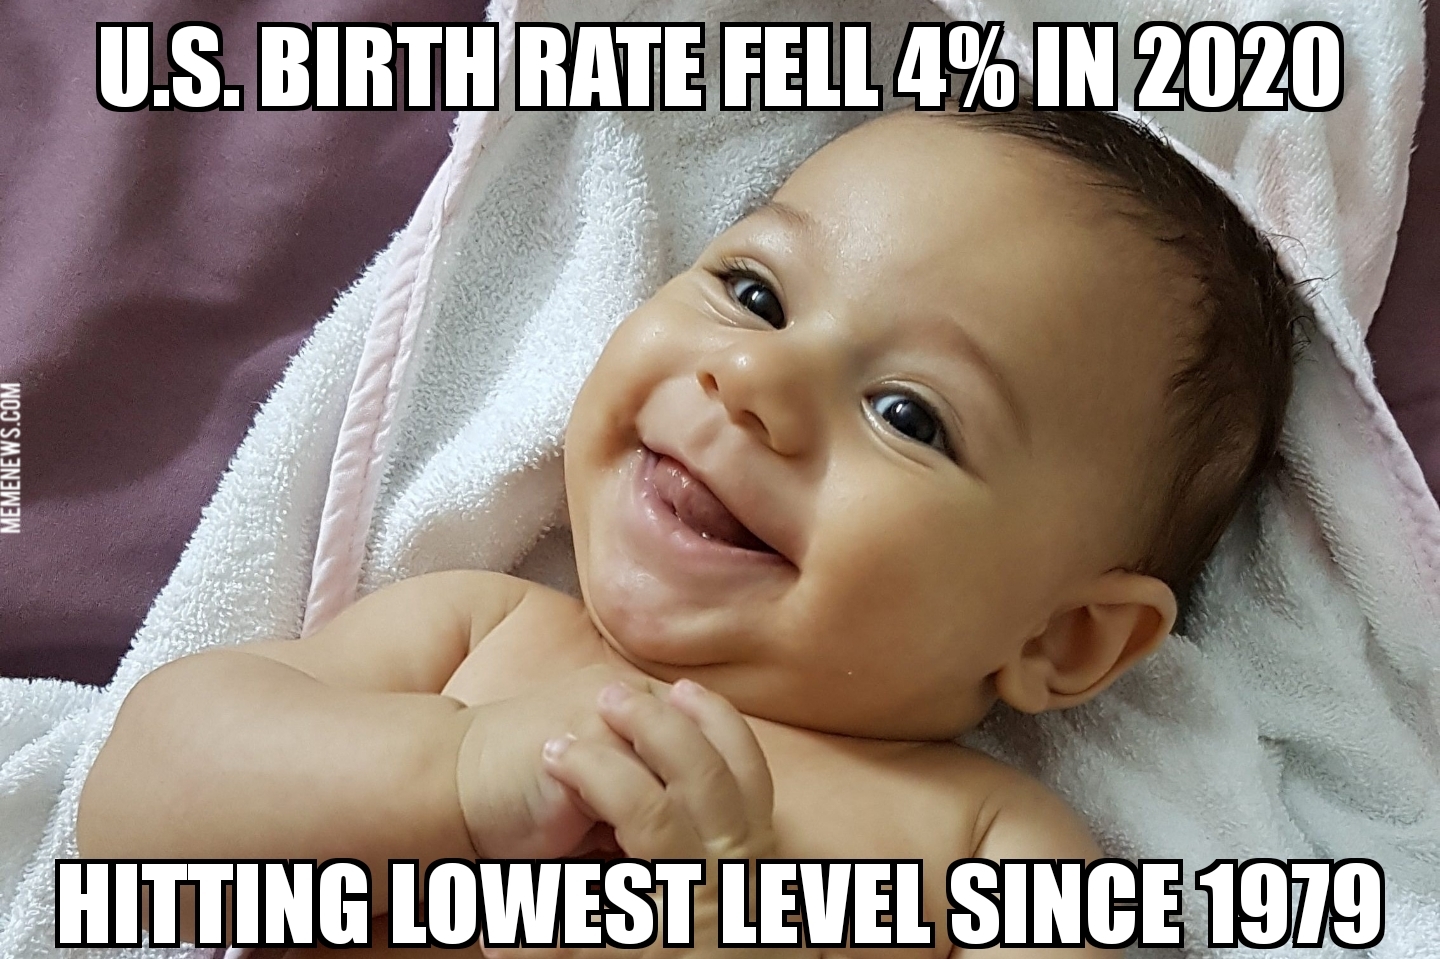 U.S. birth rate falls